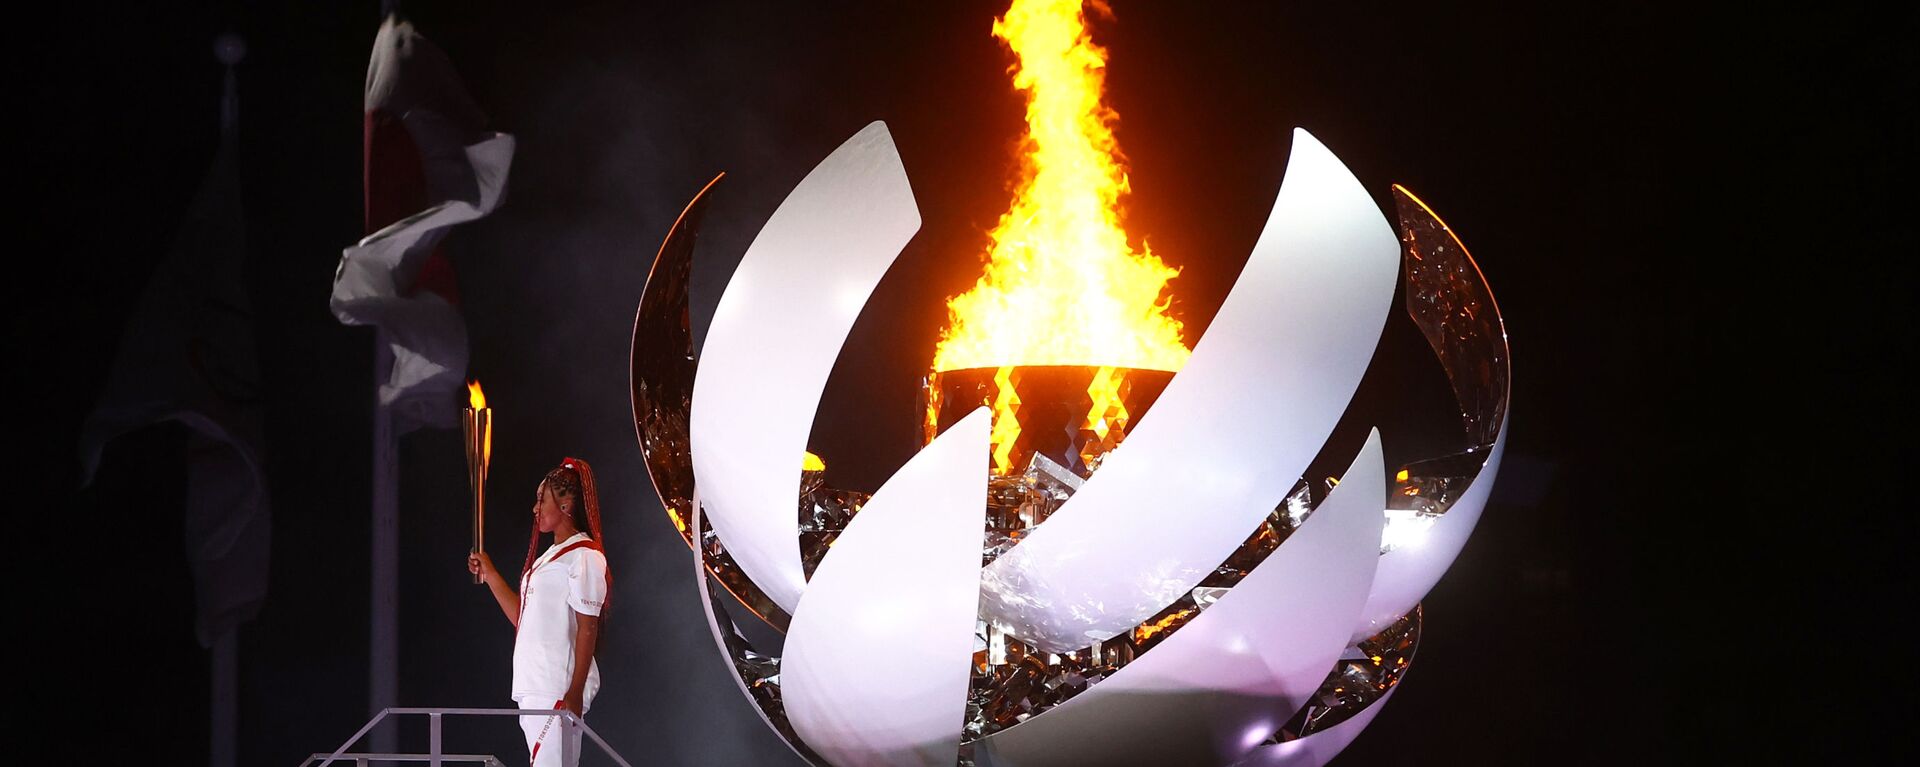 Наоми Осака из Японии держит олимпийский факел после зажжения олимпийского котла на церемонии открытия  - Sputnik Тоҷикистон, 1920, 08.08.2021